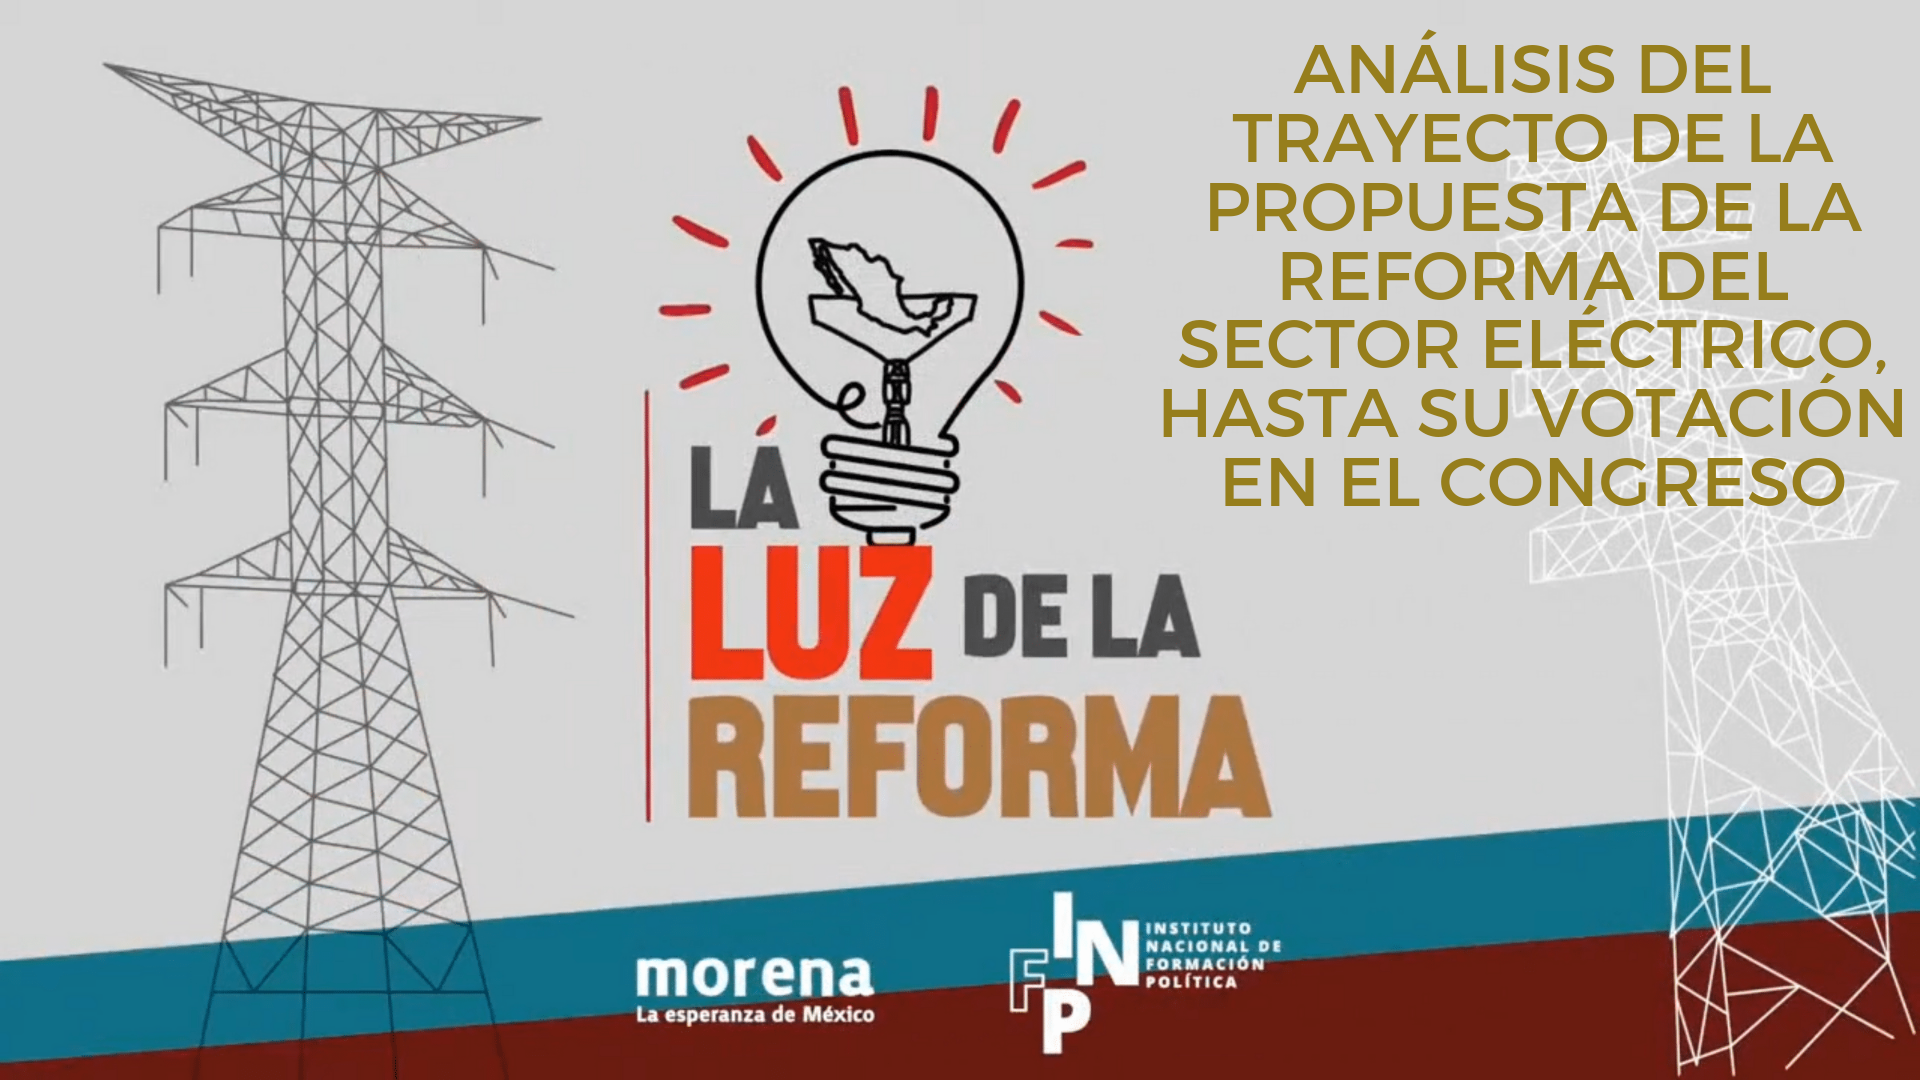 La Luz de la Reforma – Análisis del trayecto de la propuesta de la reforma del sector eléctrico, hasta su votación en el Congreso